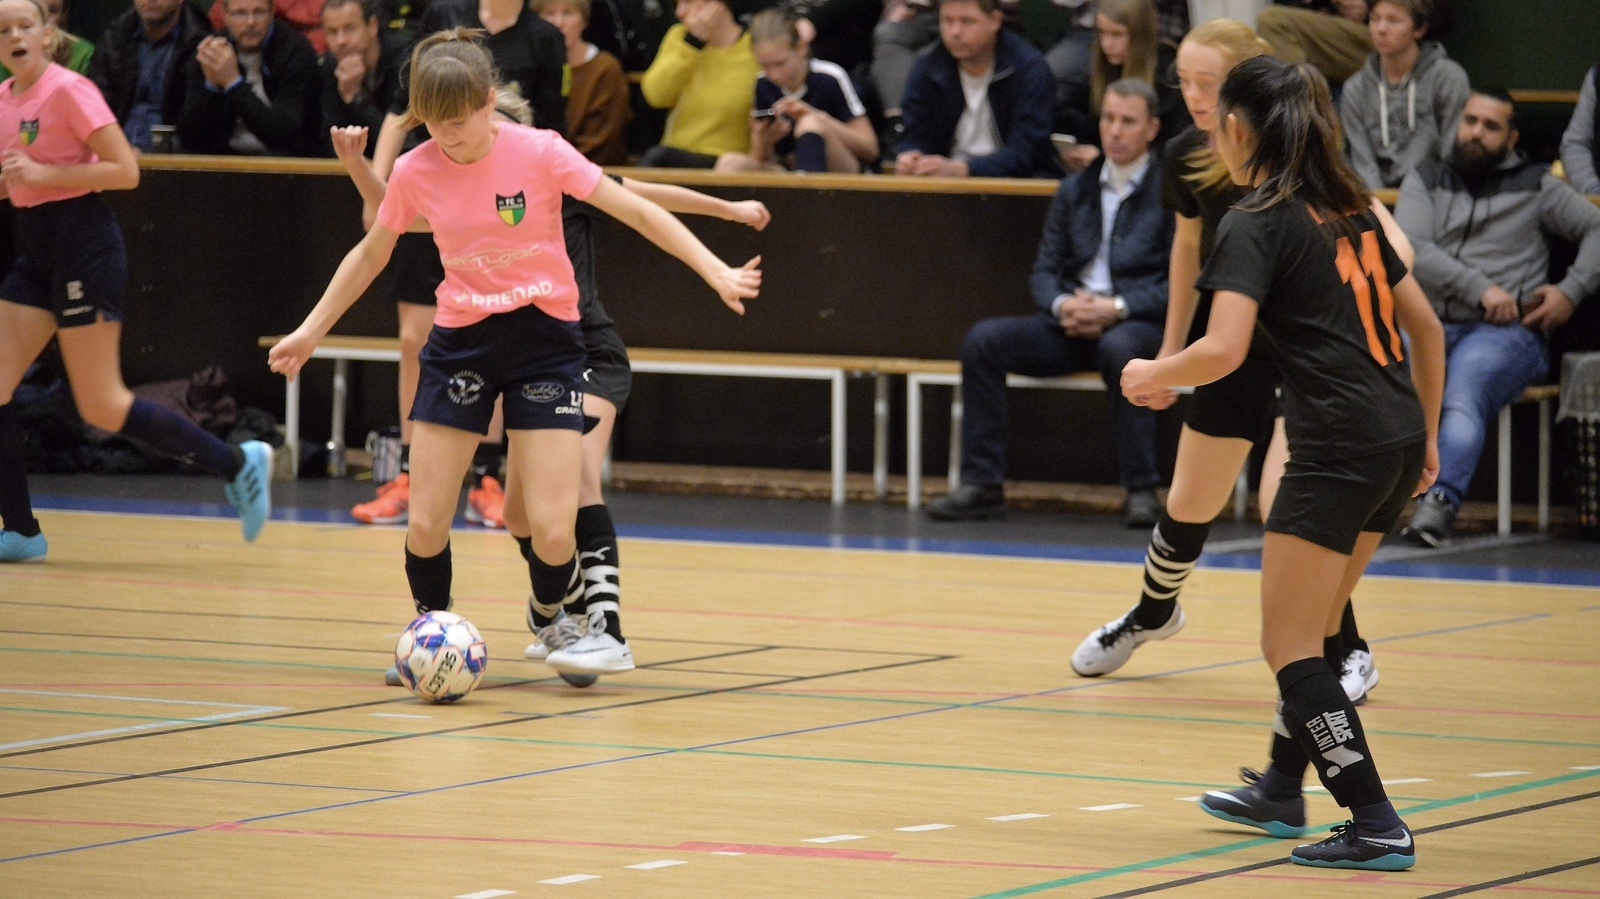 FC Hessleholm (rosa tröjor), här i match mot Strövelstorp, har en stor kull 13-åringar och för dem är deltagande i Snapphanecupen en sjlävklarhet. Foto: Jan Rydén